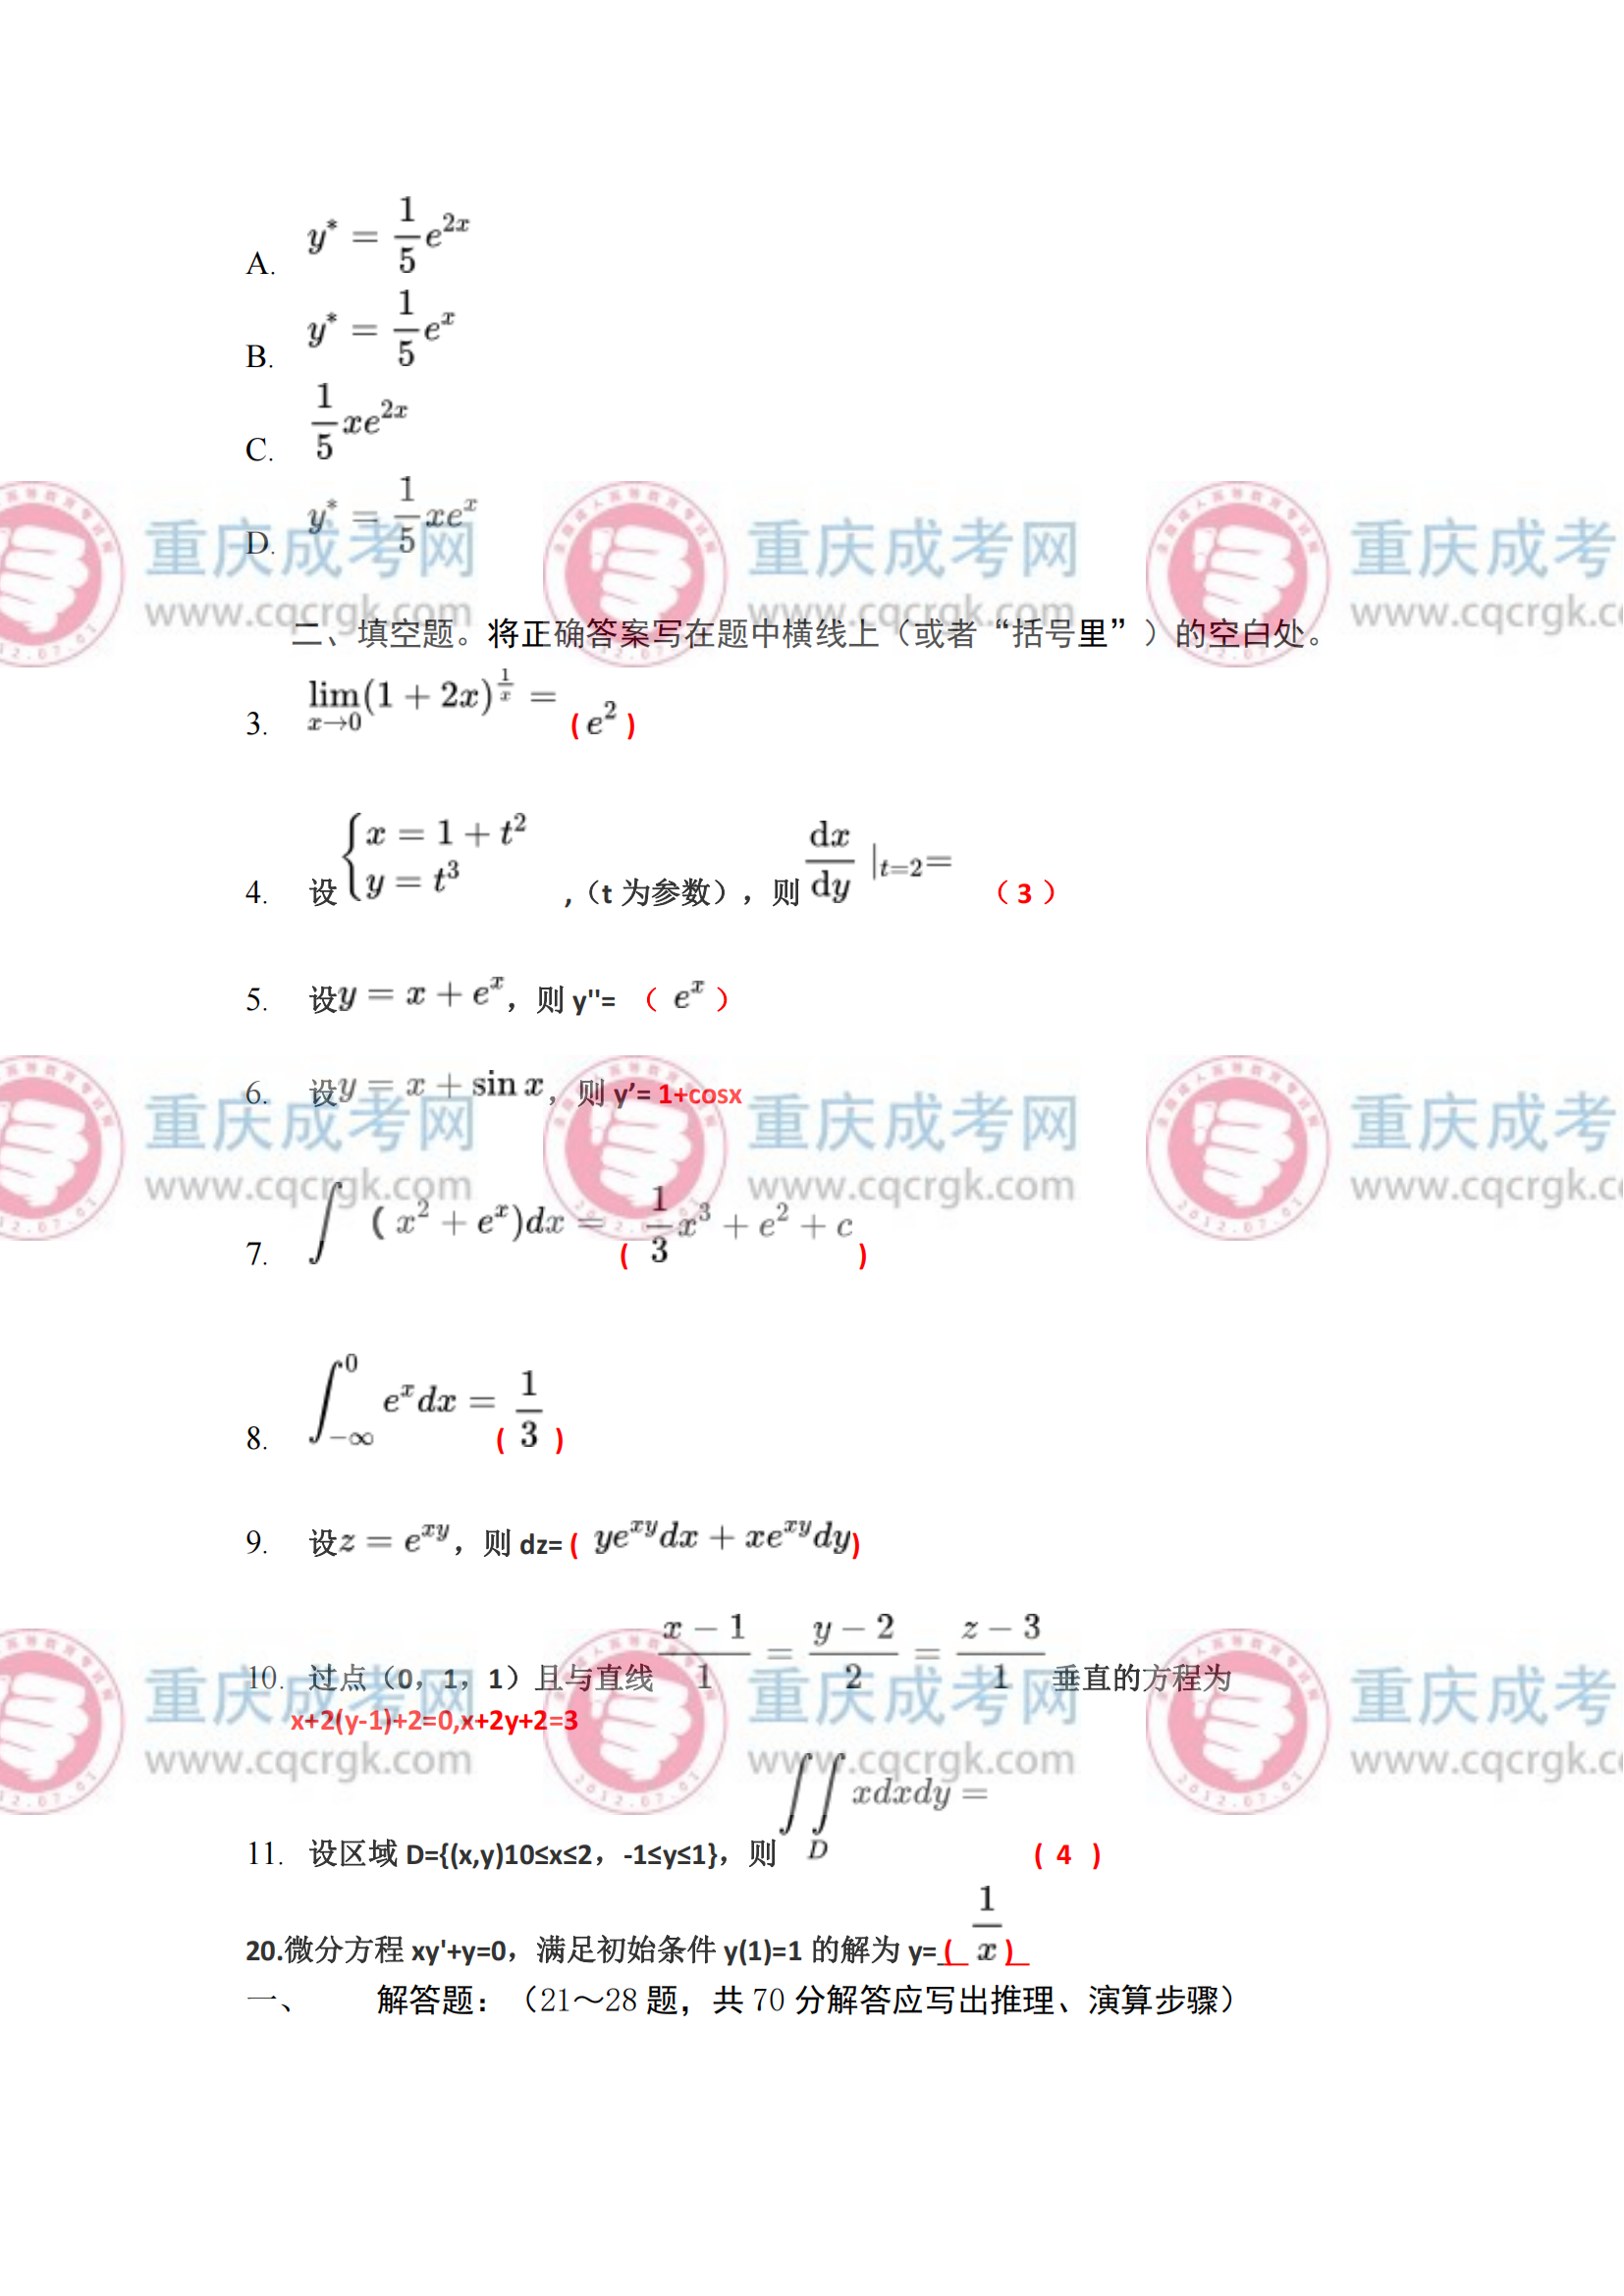 重庆成人高考专升本《高等数学一》真题及答案解析